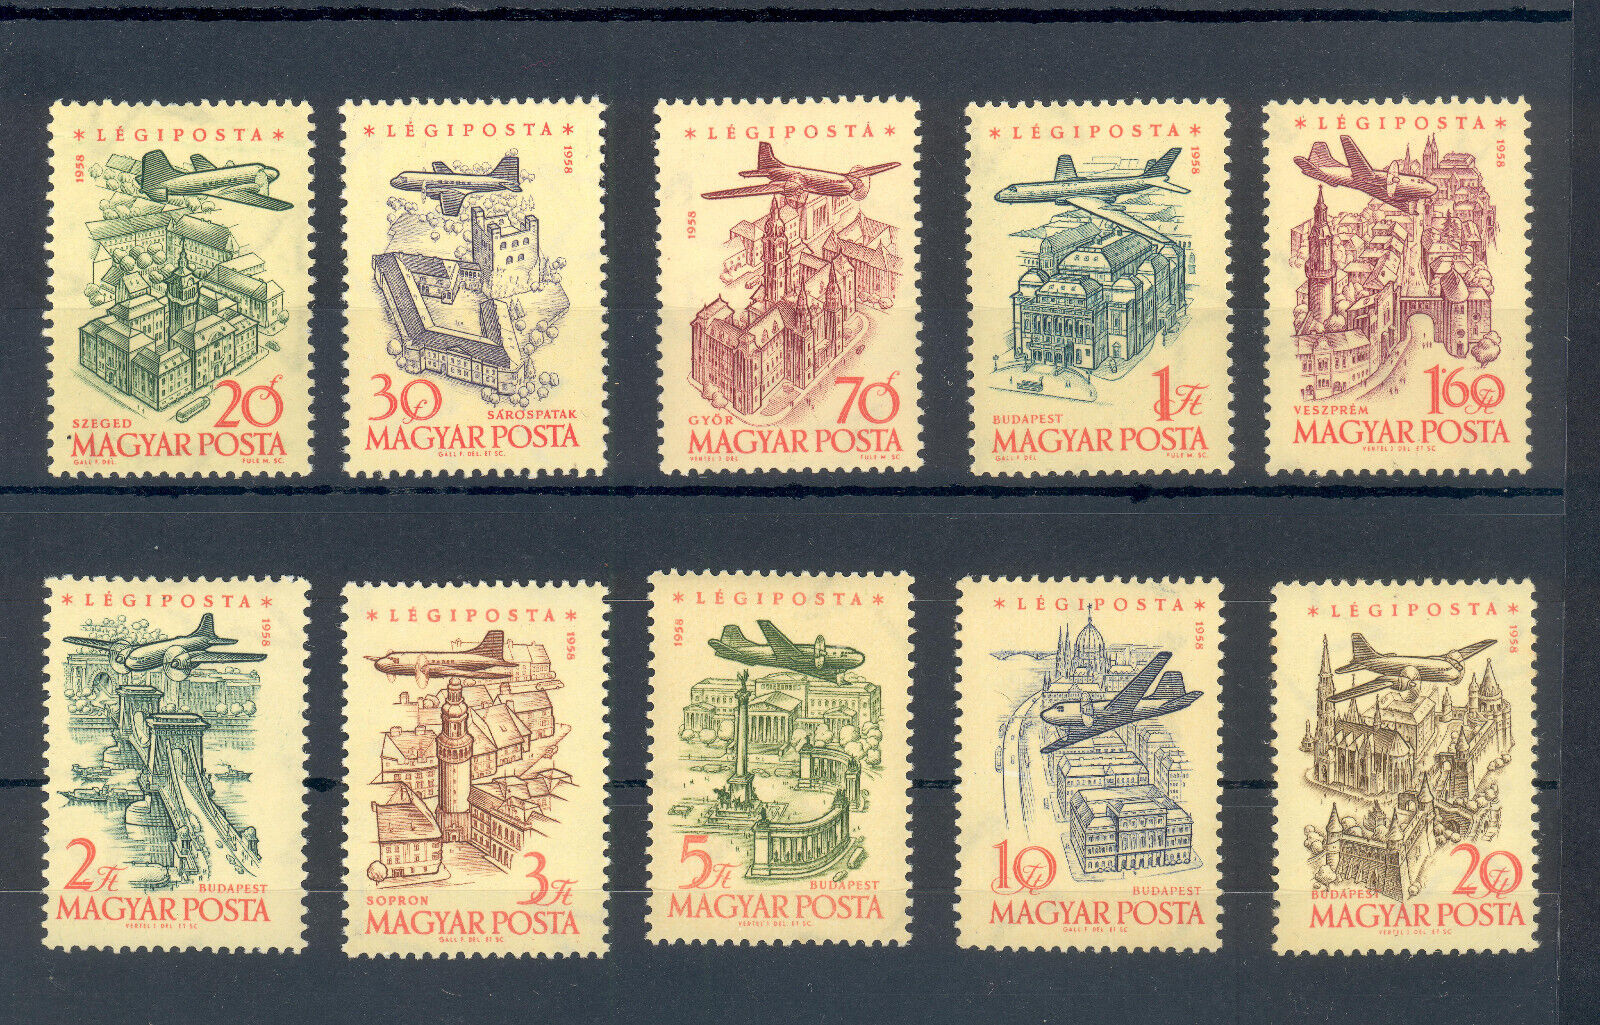 Ungaria 1958 - Posta Aeriana, vederi, serie neuzata